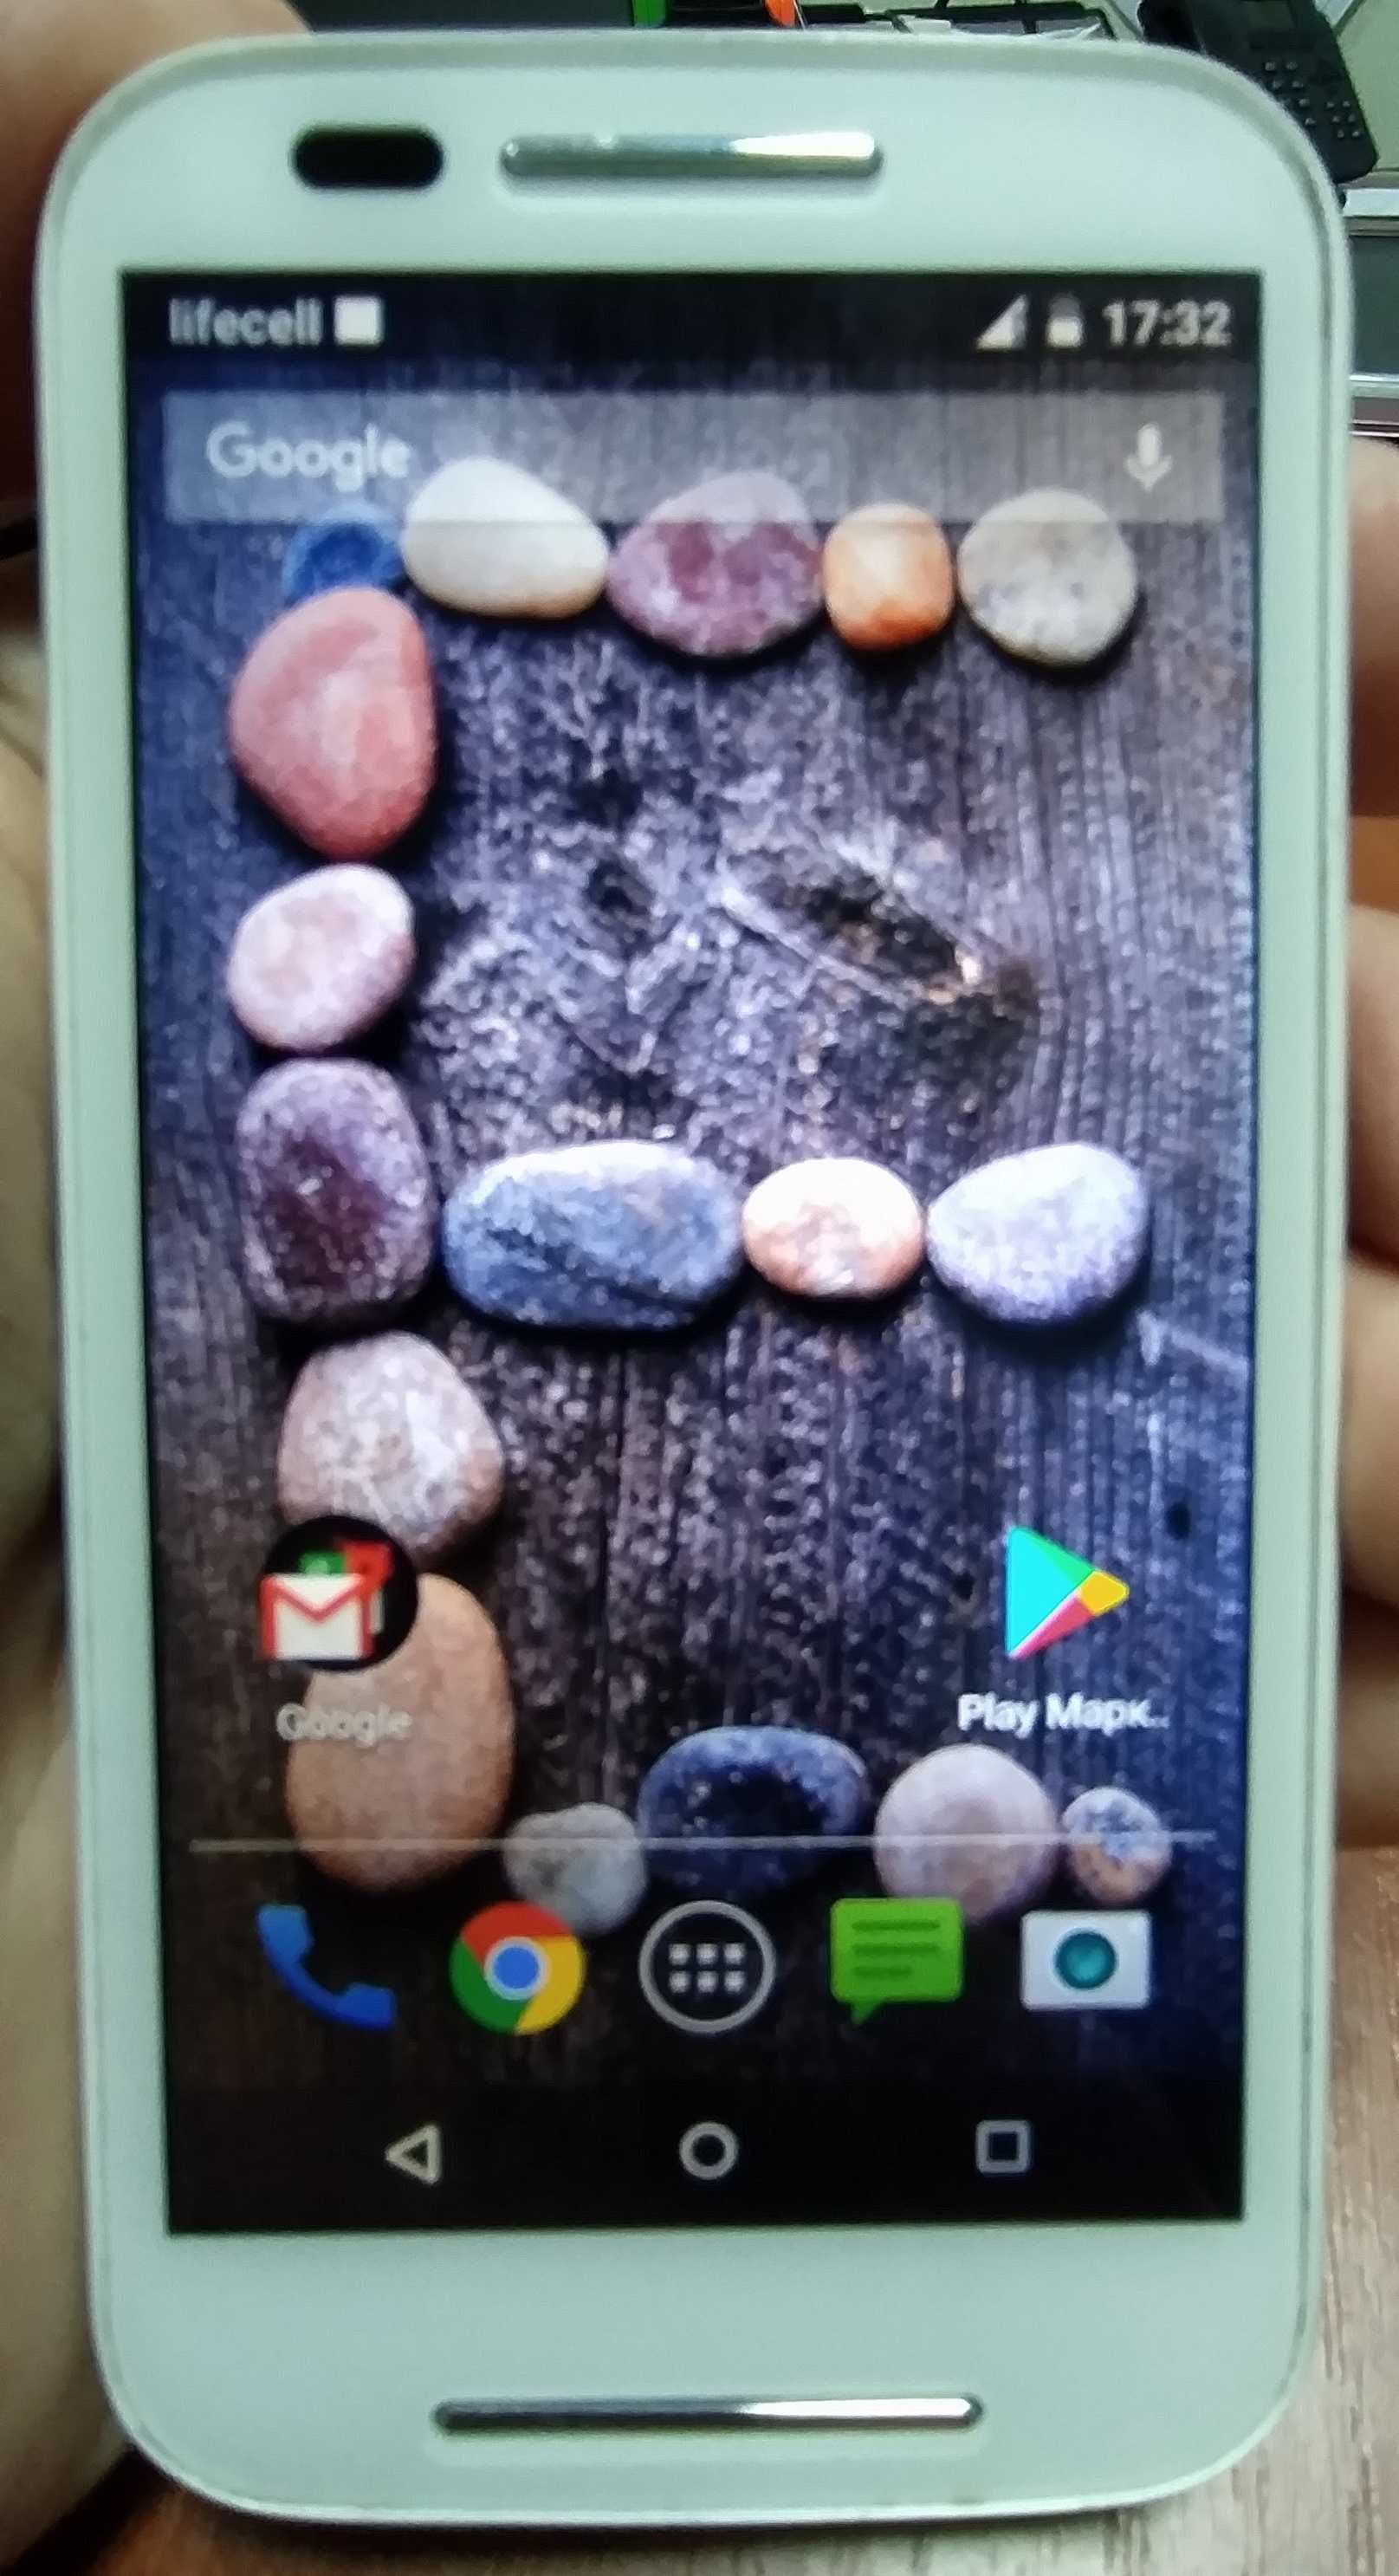 Motorola Moto E (XT1021)